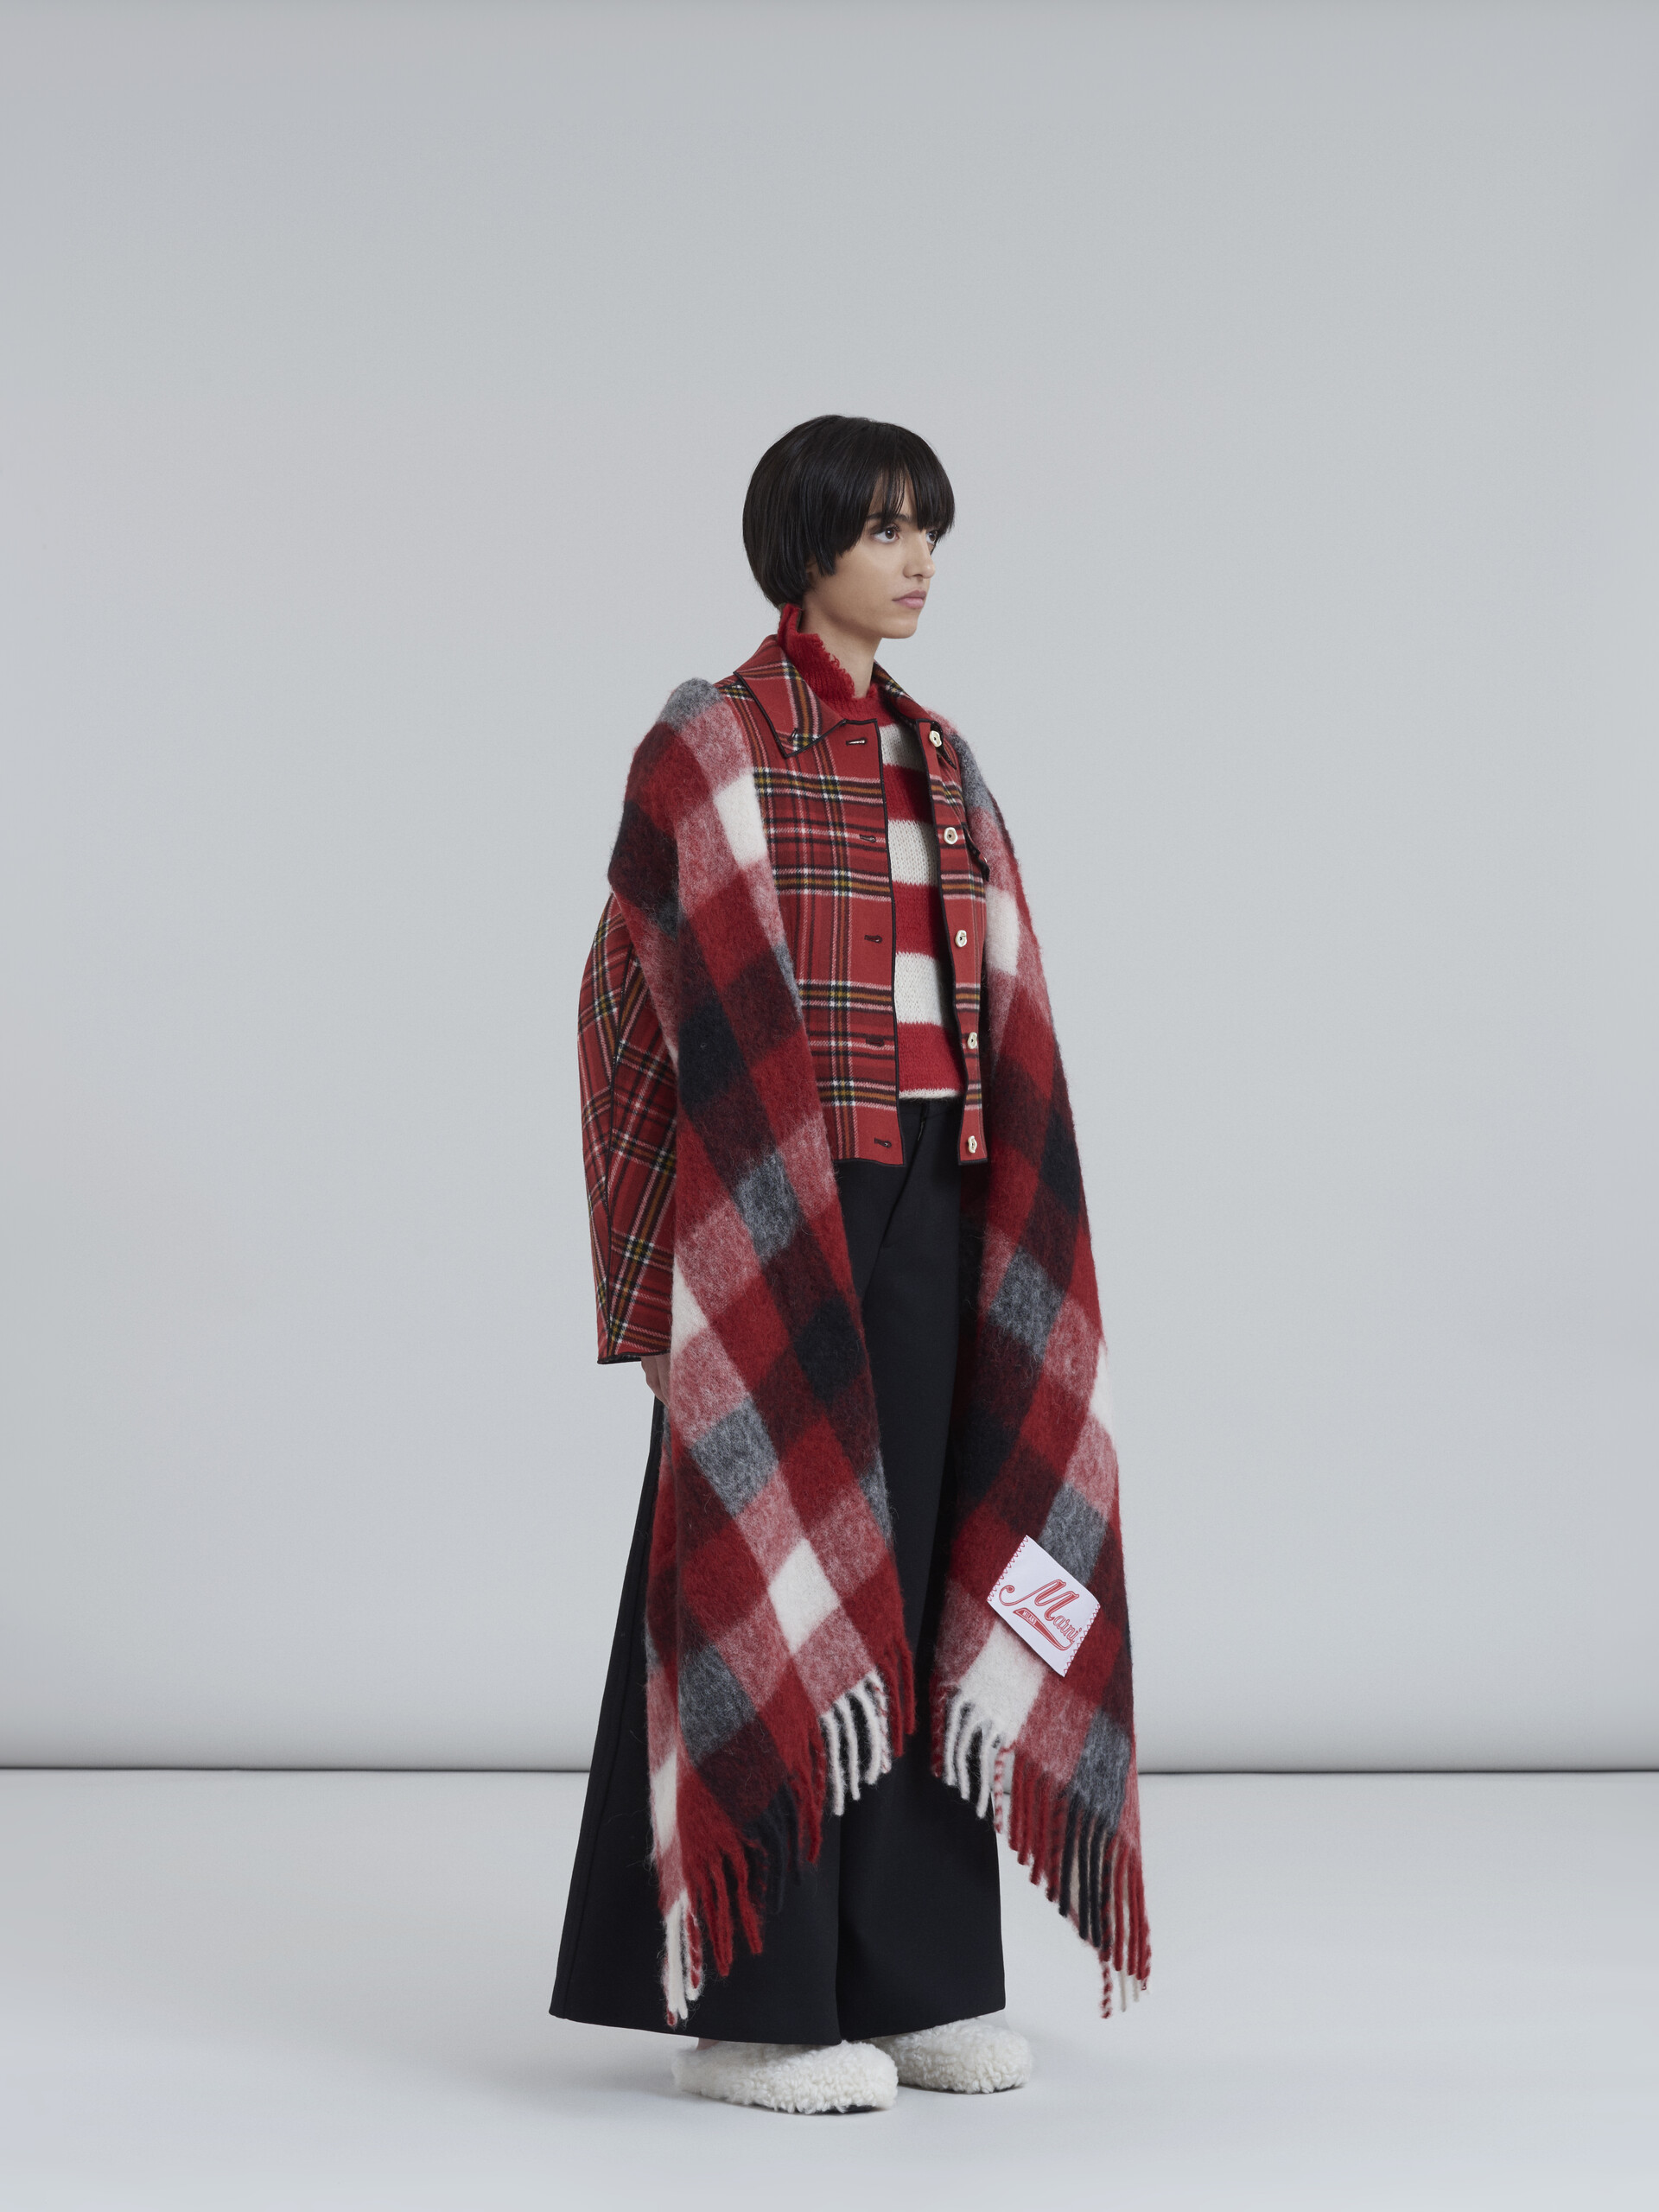 Cappotto in lana melton double face con interno e piping a contrasto - Giacche - Image 6